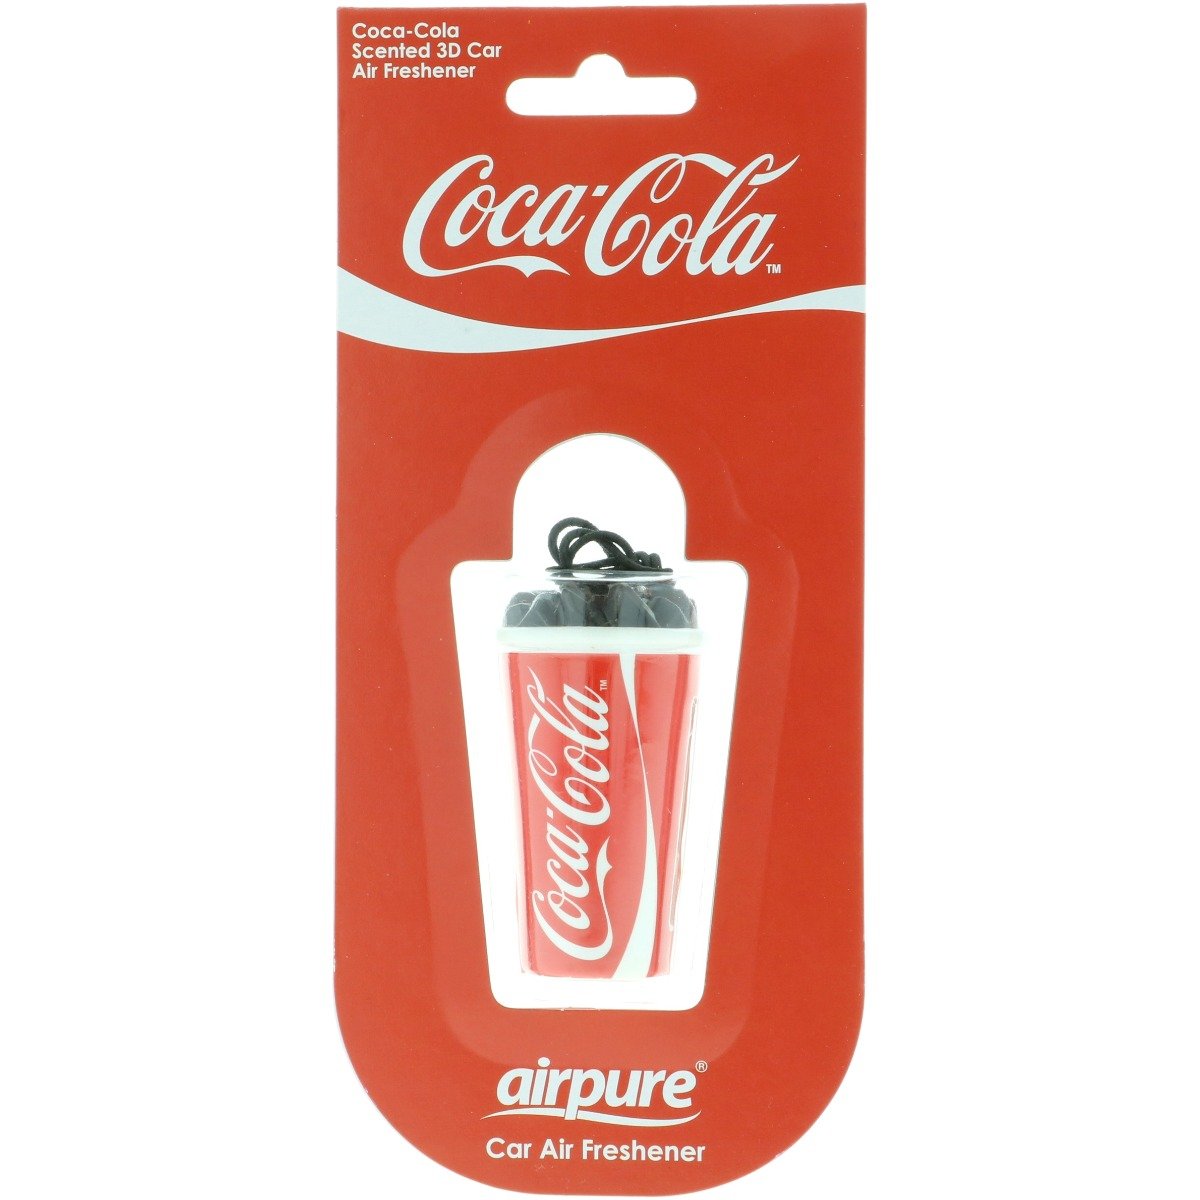 Coca-Cola Air Freshener - Original